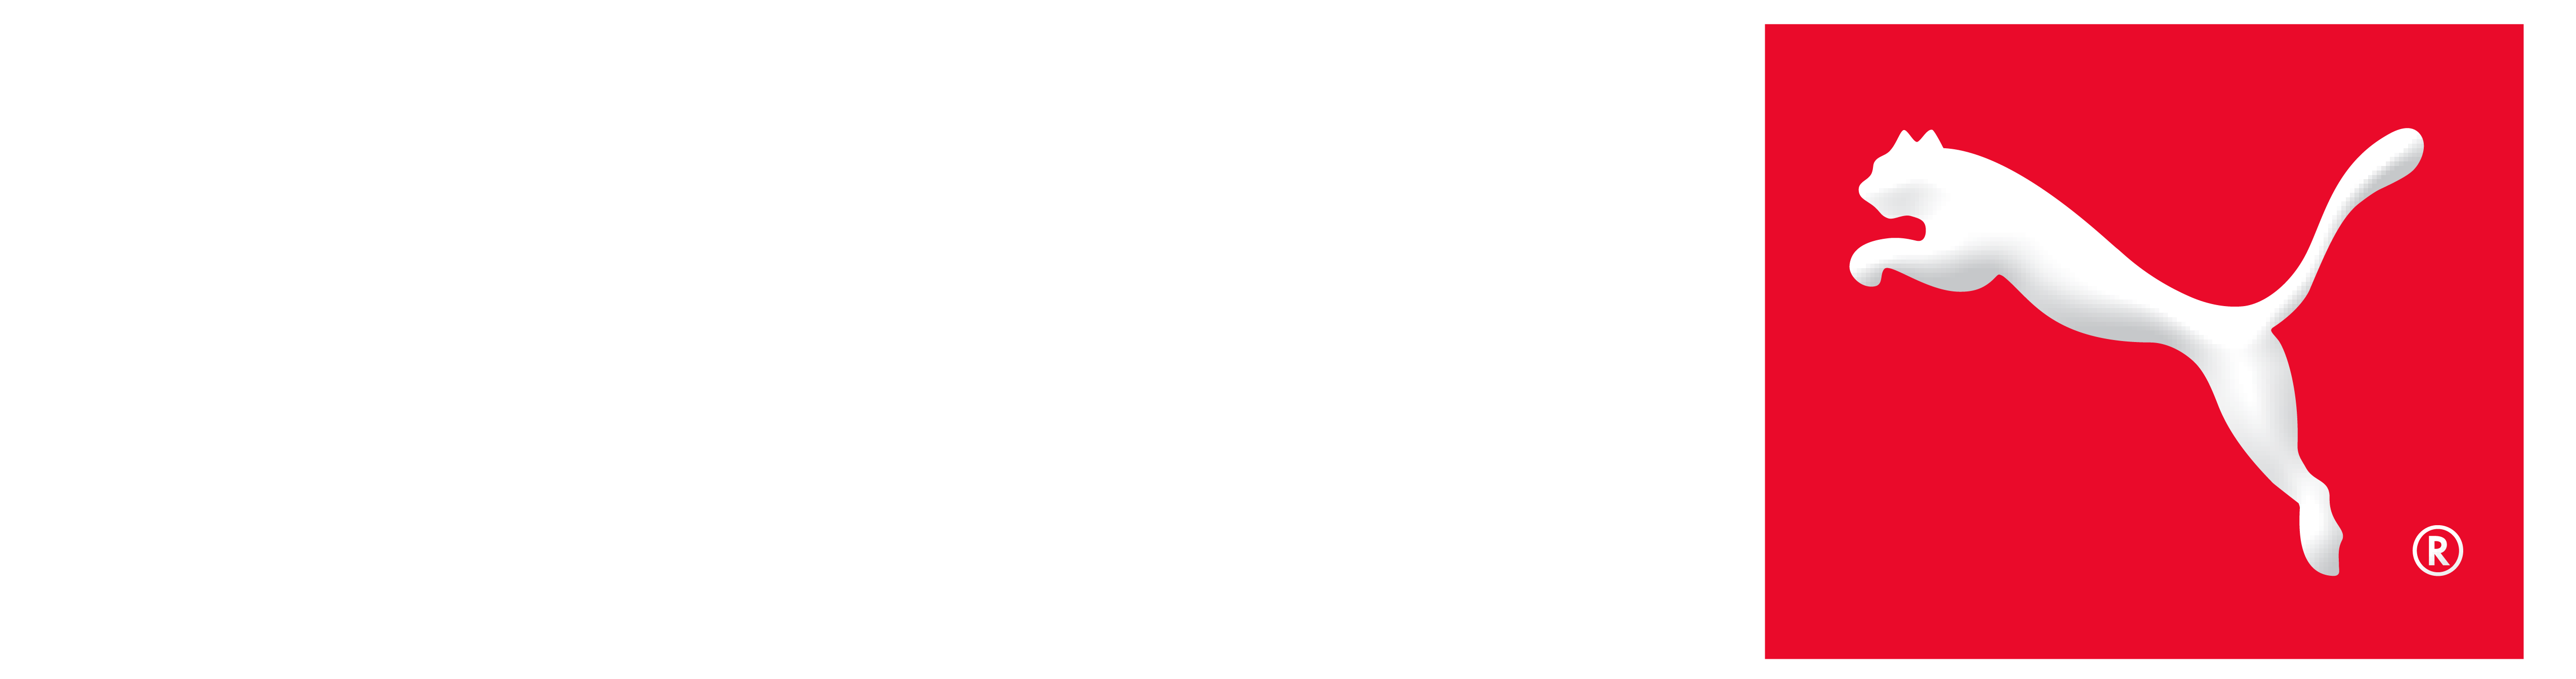 OneSports